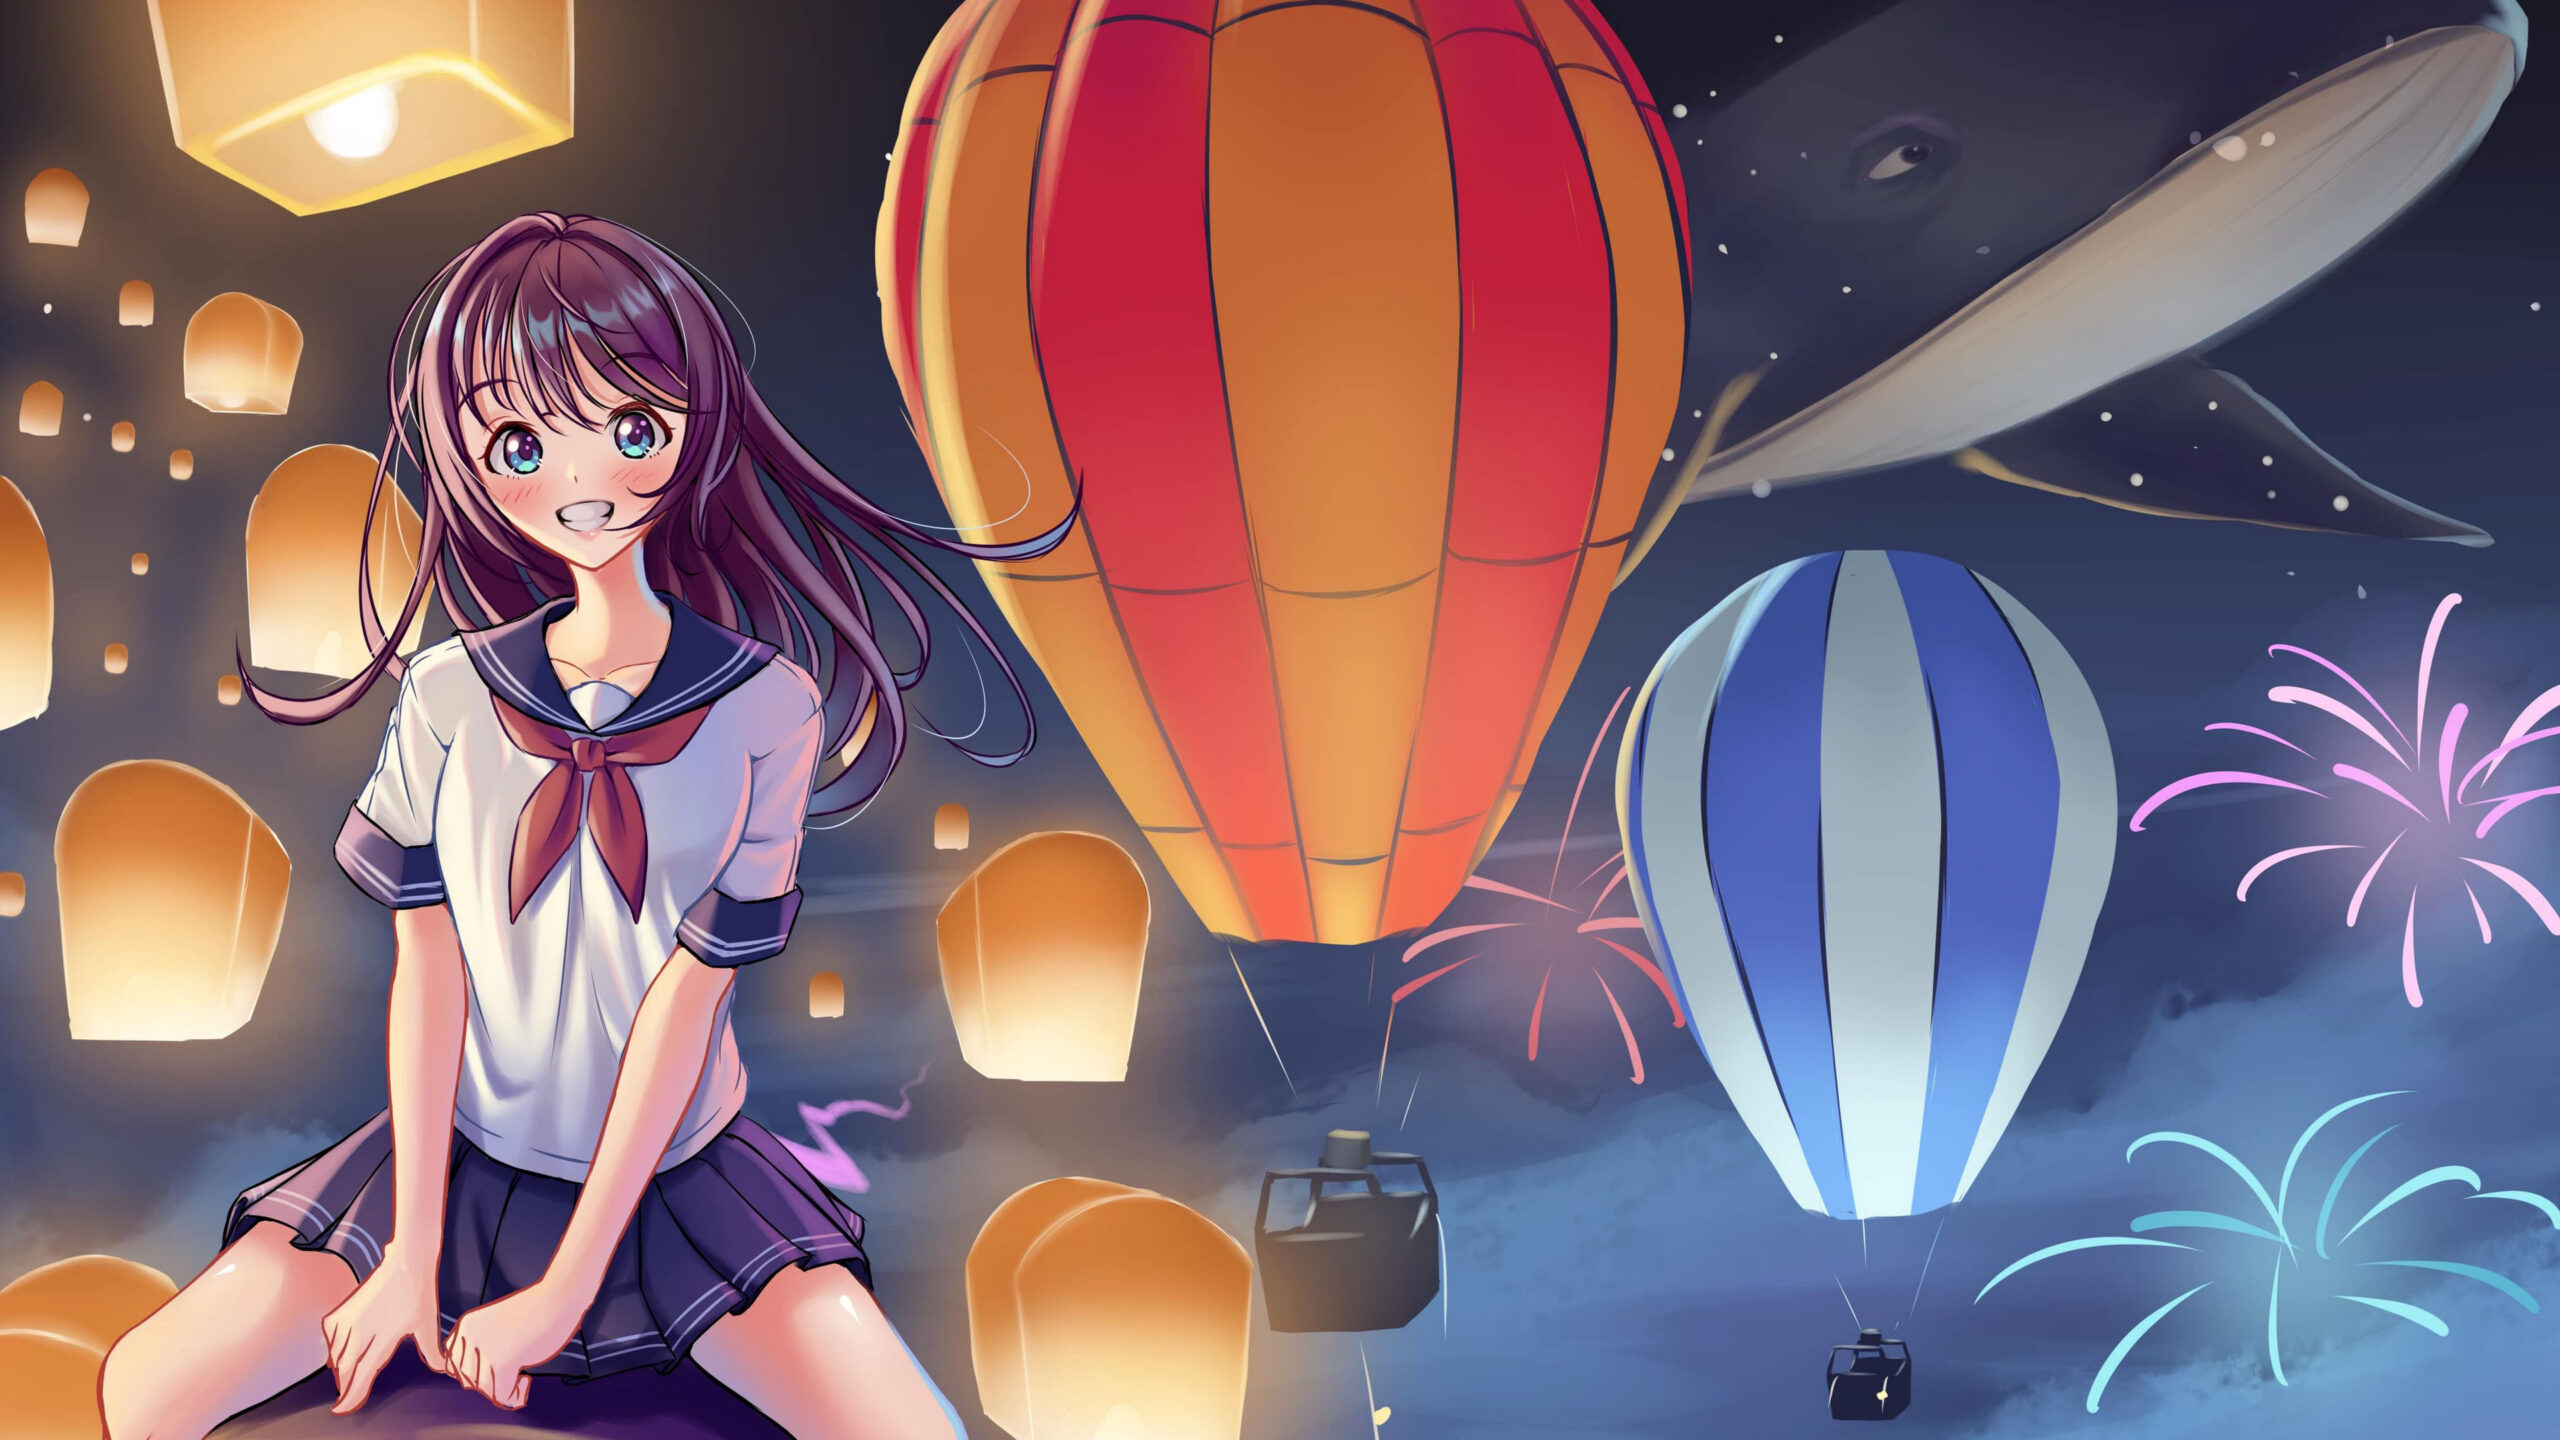 Smiling Anime Girl With School Uniform In Lanterns Balloons Wallpaper K 2K Anime Girl